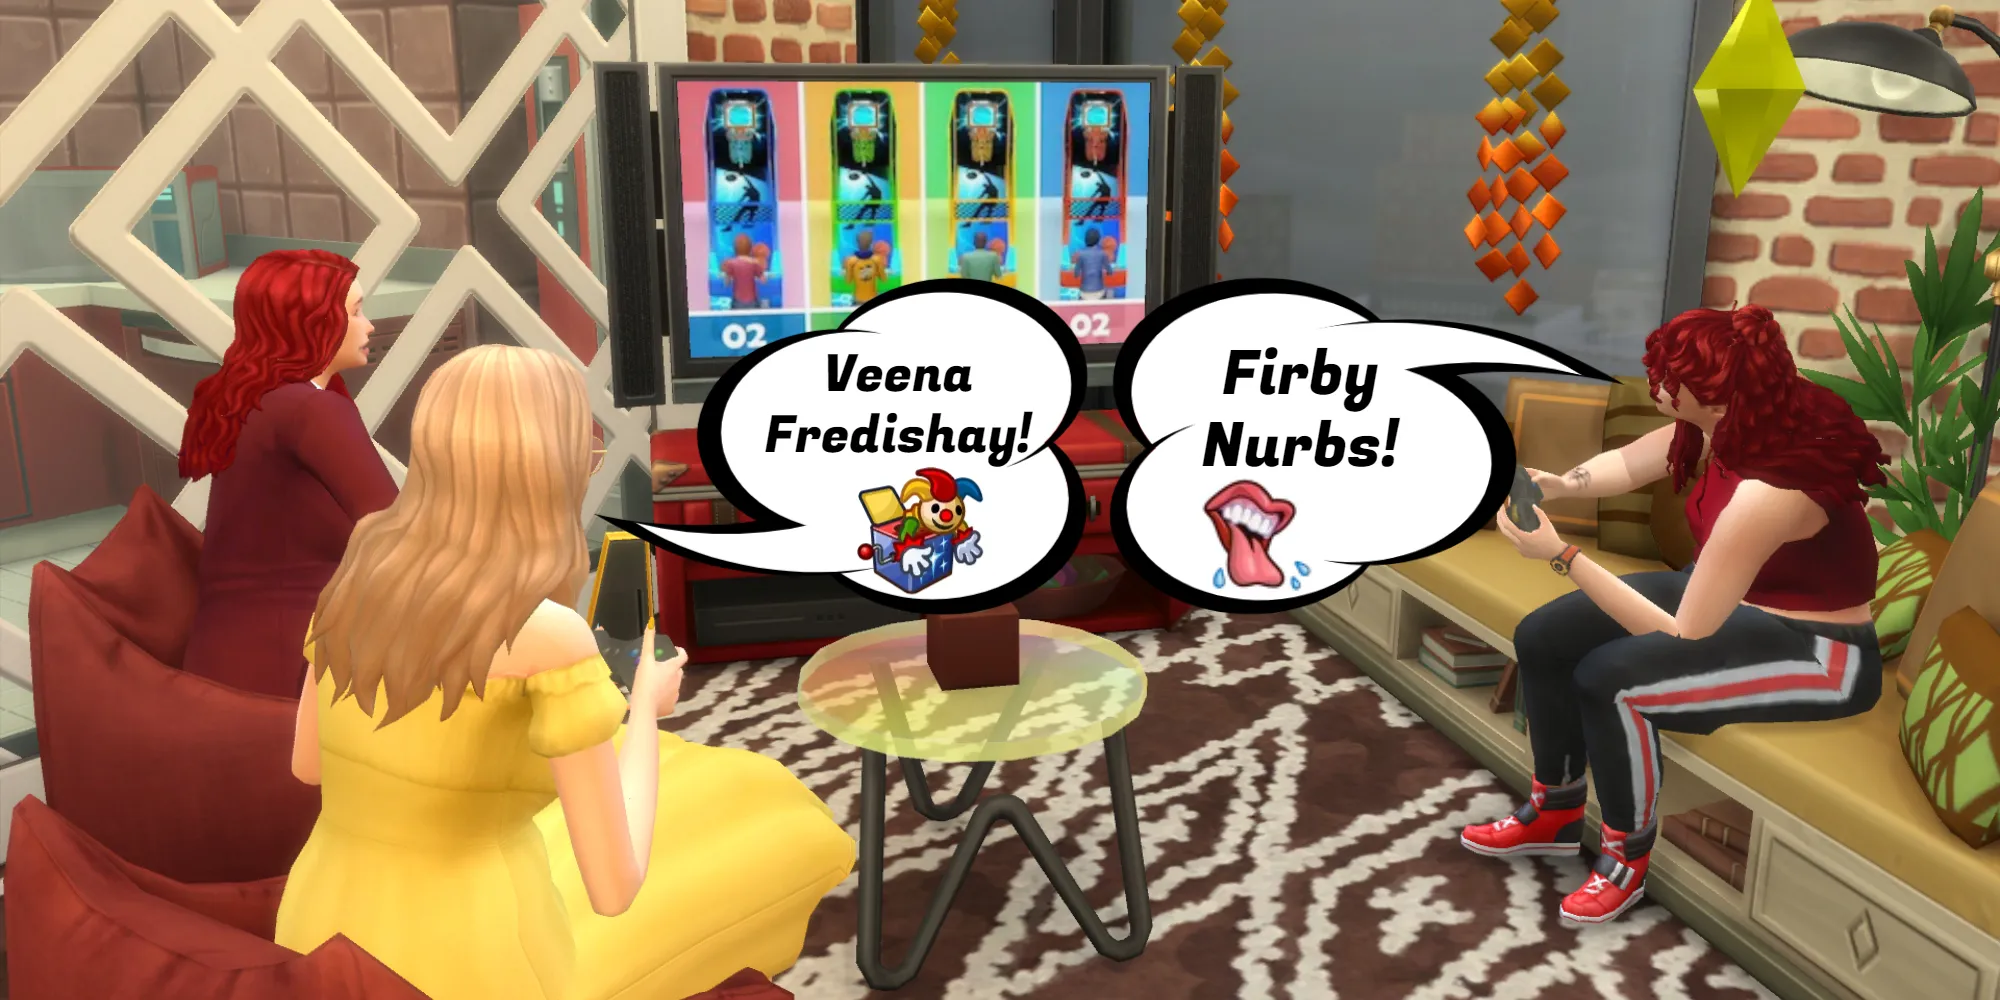 Nella lingua Simlish, la frase Veena Fredishay significa giochiamo. Nell'immagine ci sono tre Sims che giocano a un videogioco in TV.